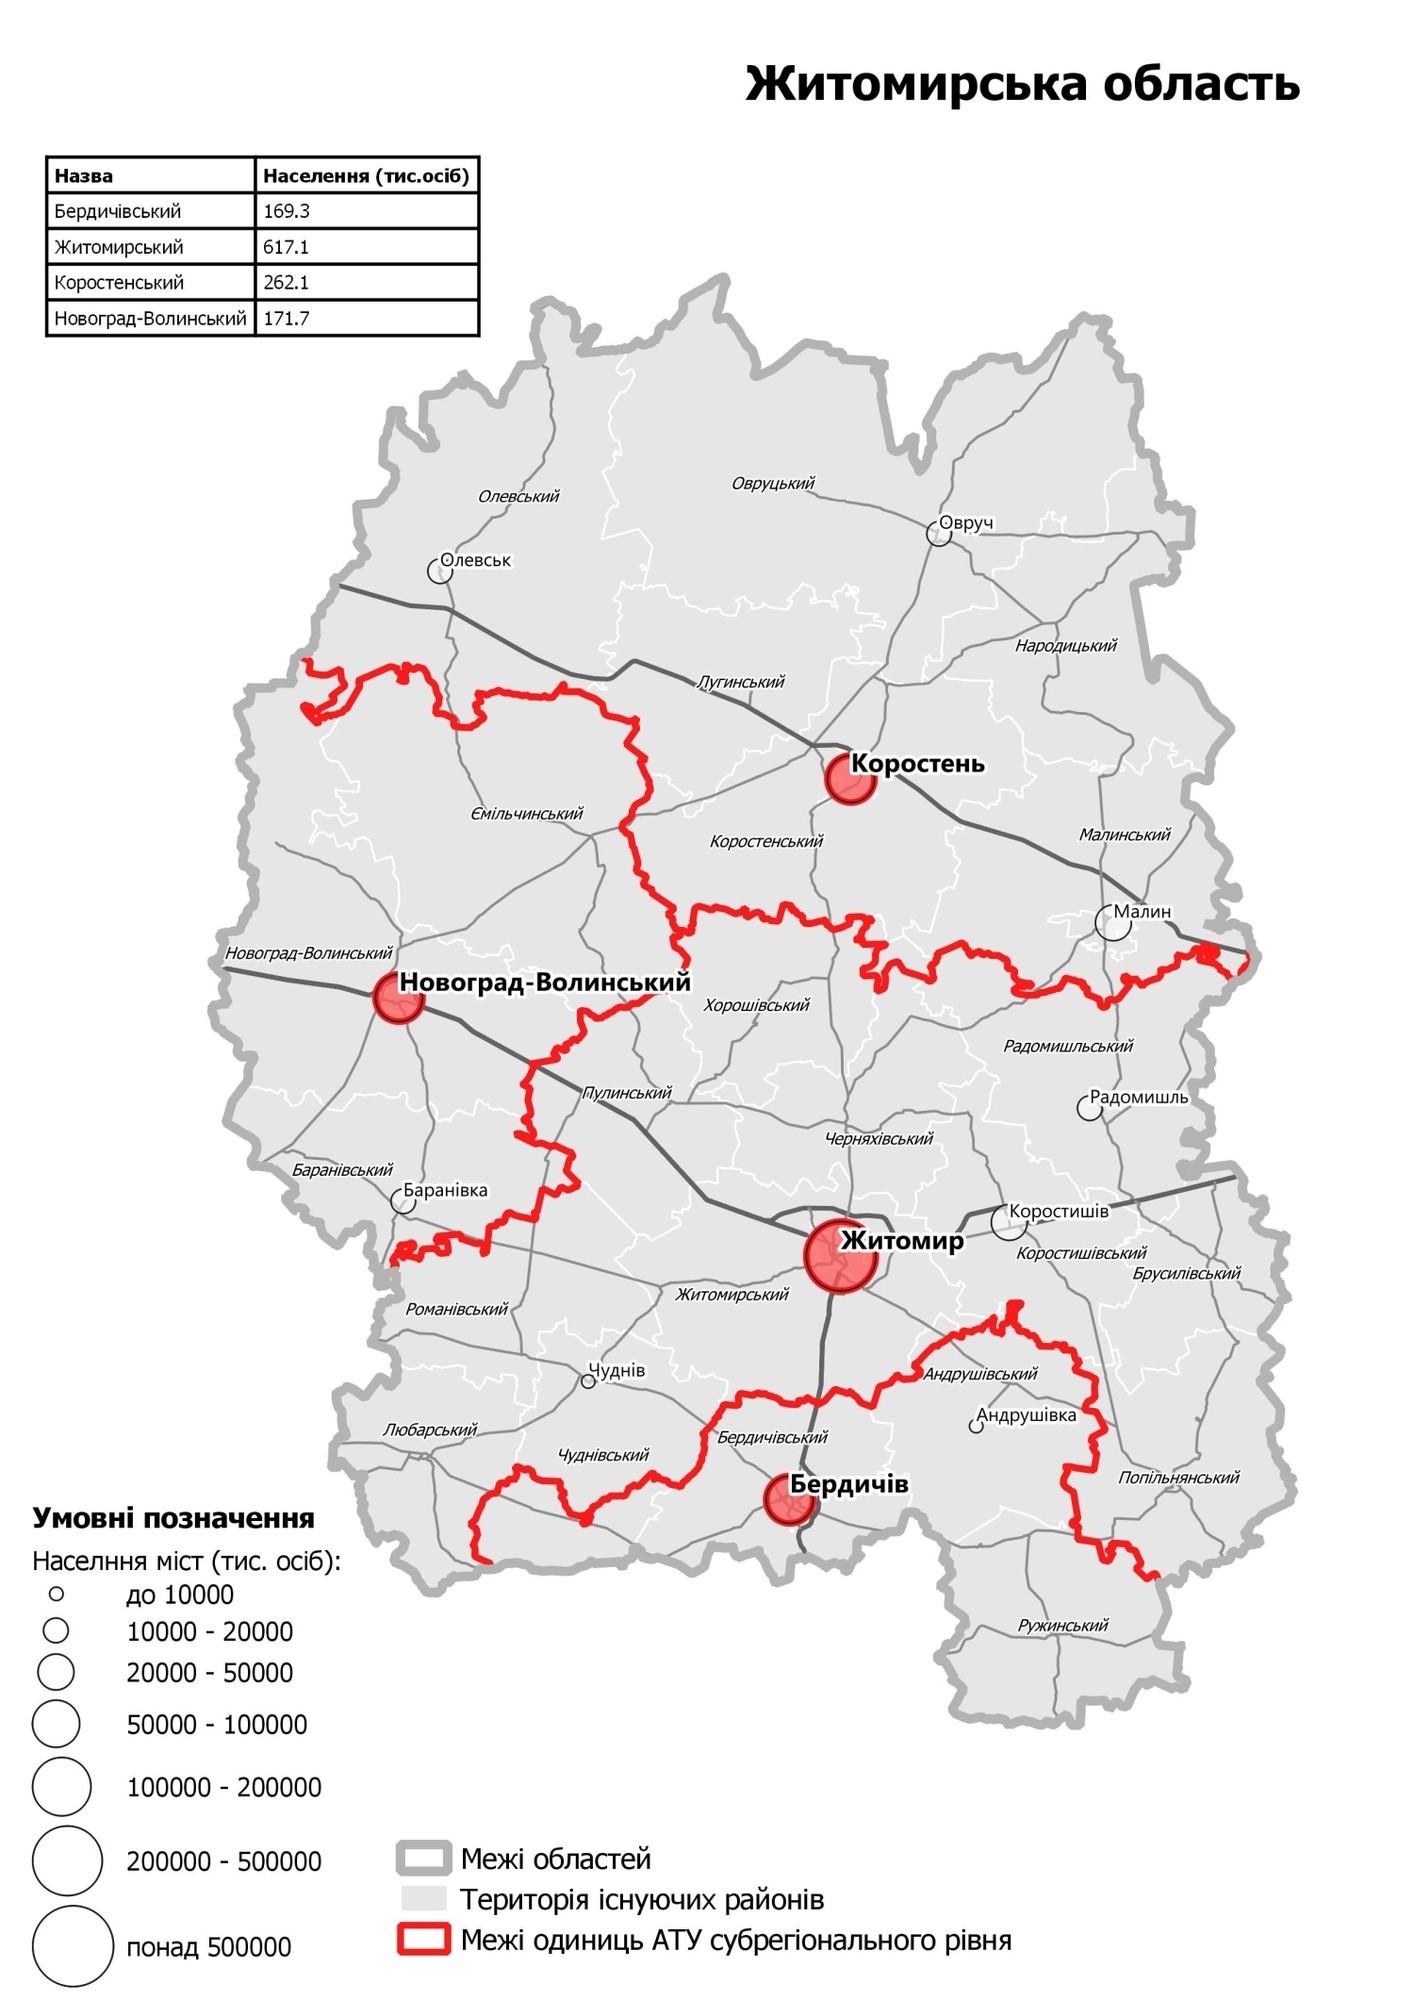 В Україні захотіли "перекроїти" області: опубліковано проєкт оновленої карти